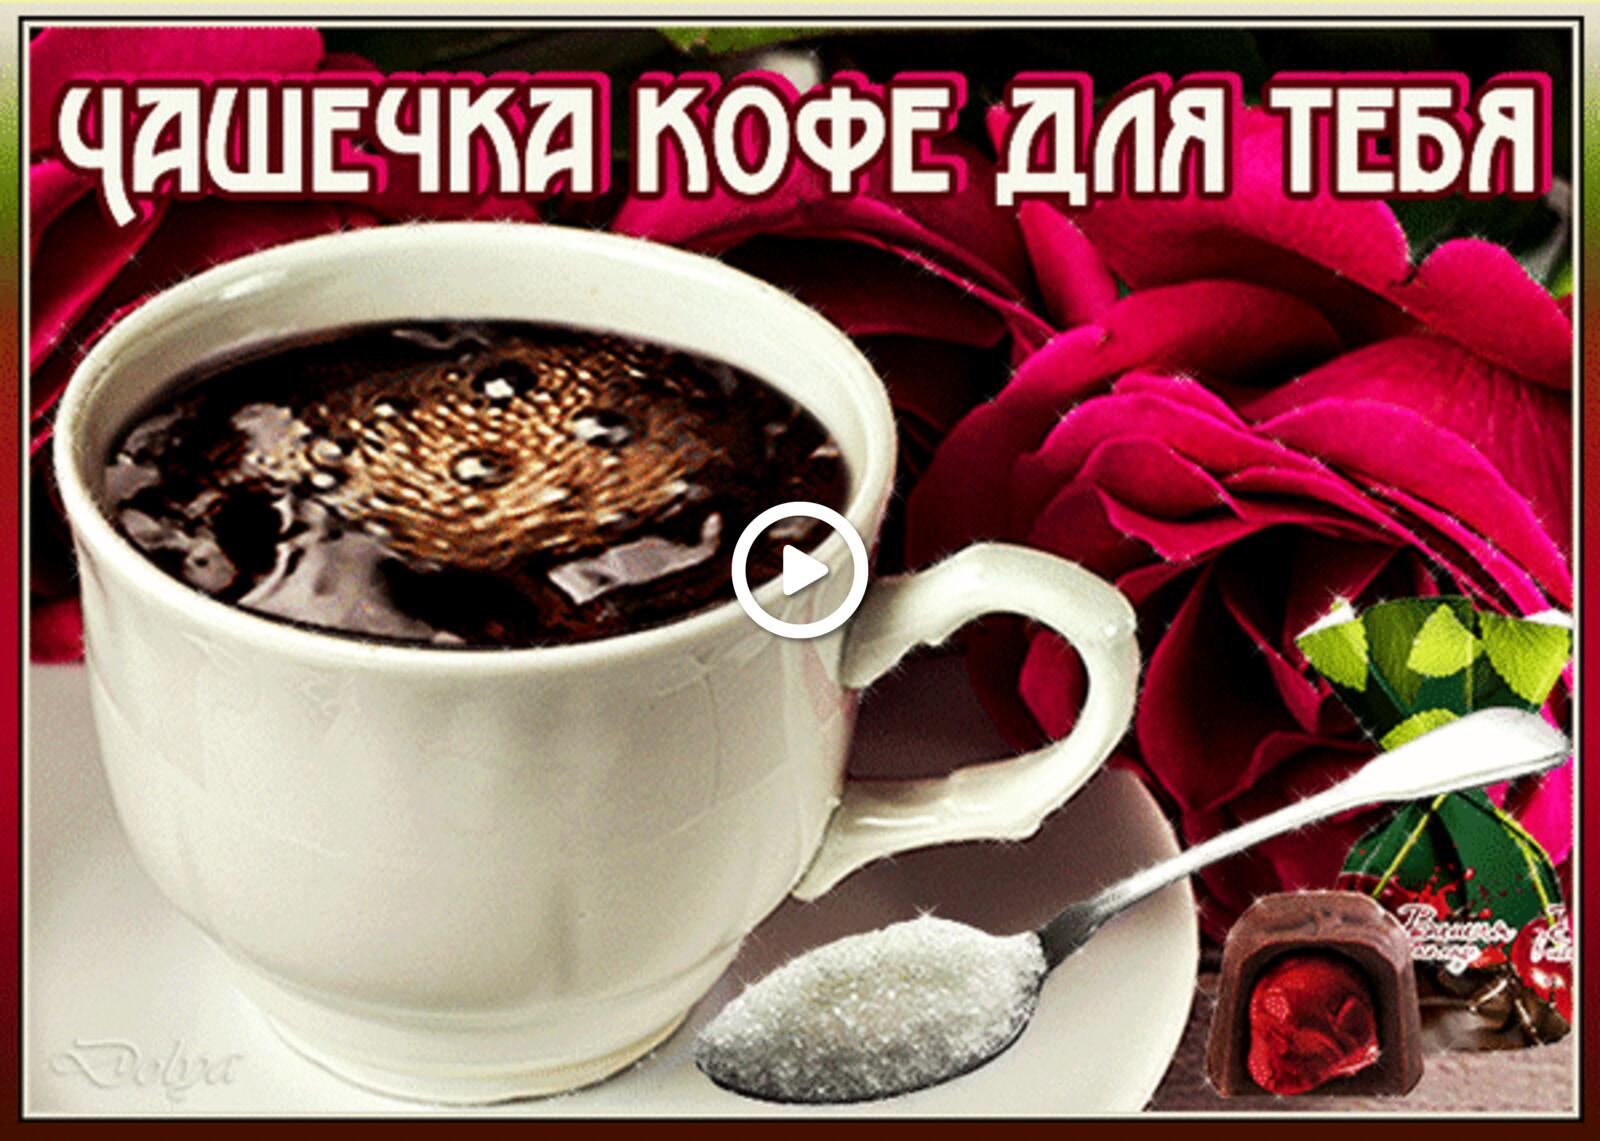 一张以疗 咖啡 鲜花为主题的明信片